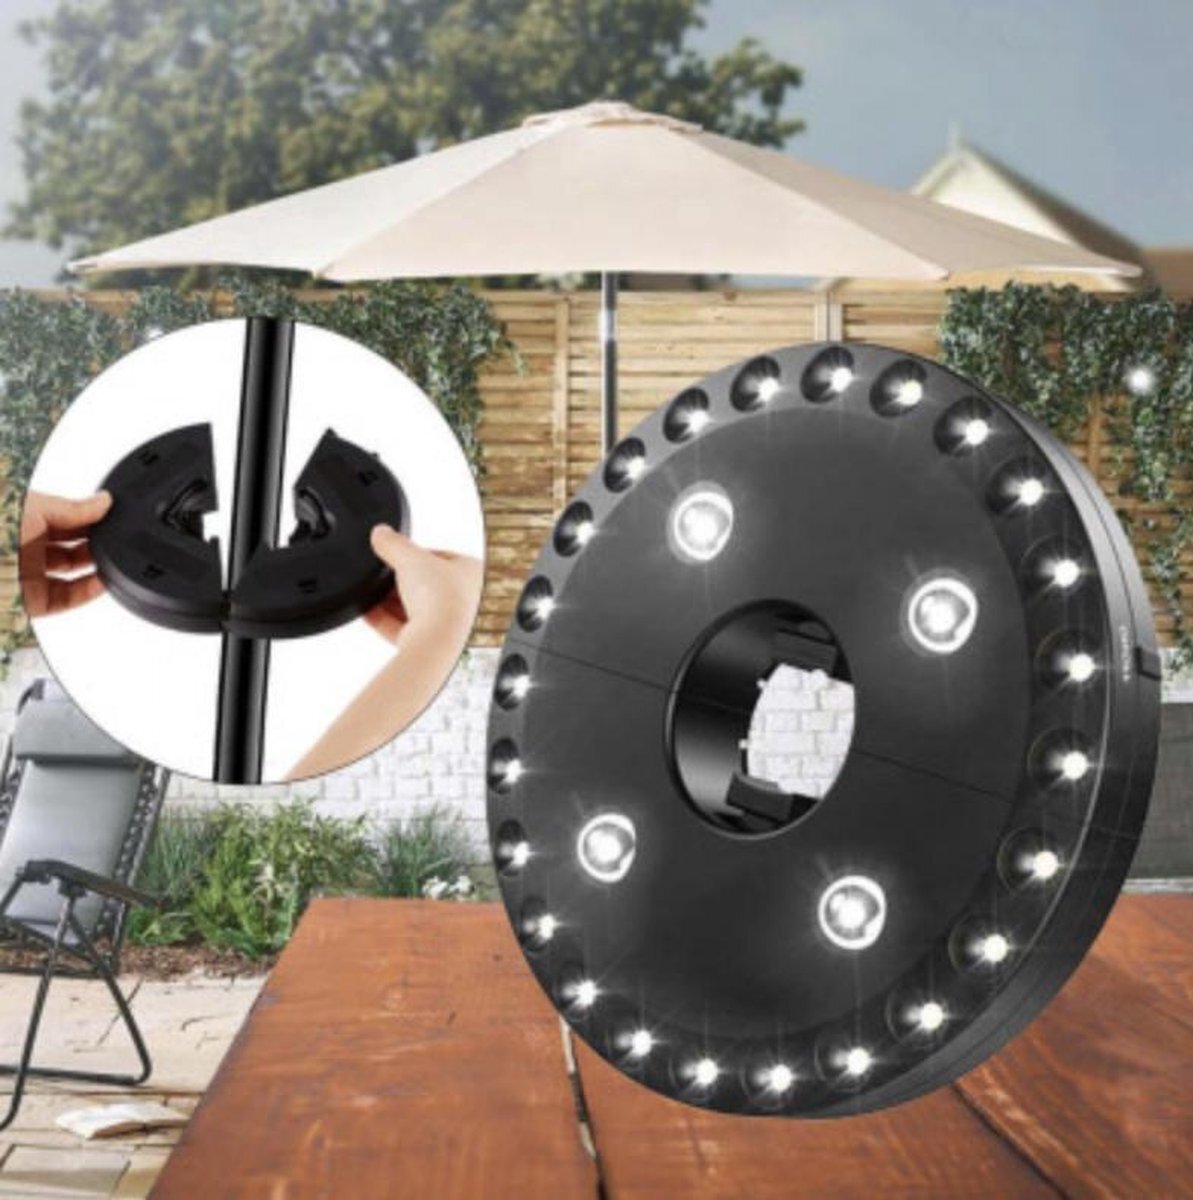 Alucard Parasolverlichting - partyverlichting - parasolverlichting led - parasol licht - 3 standen